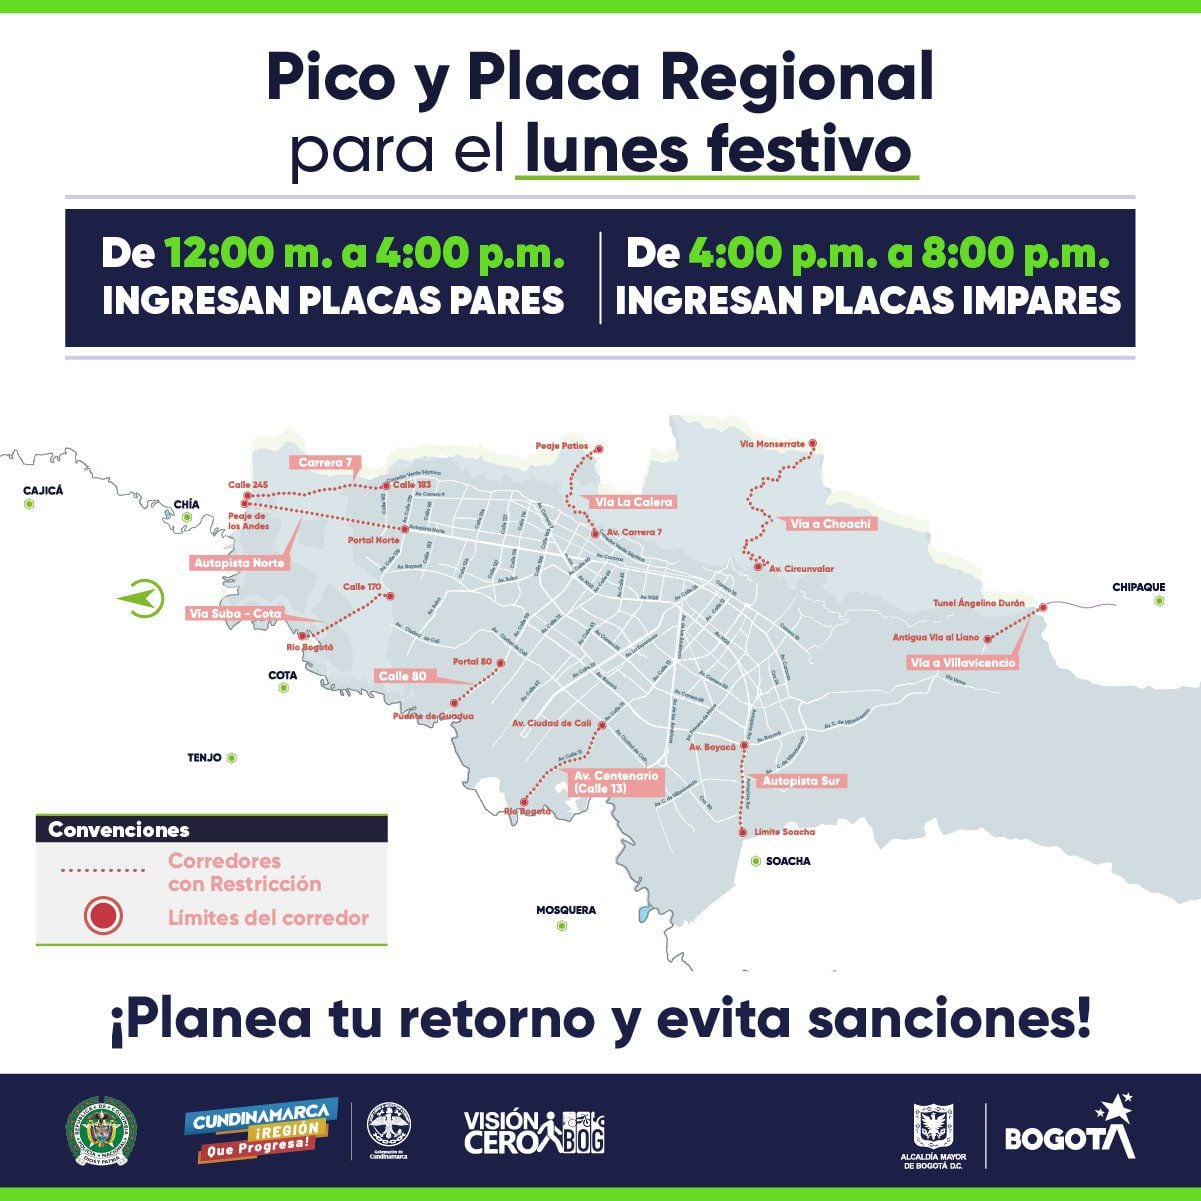 Pico y placa regional 16 de octubre Bogotá